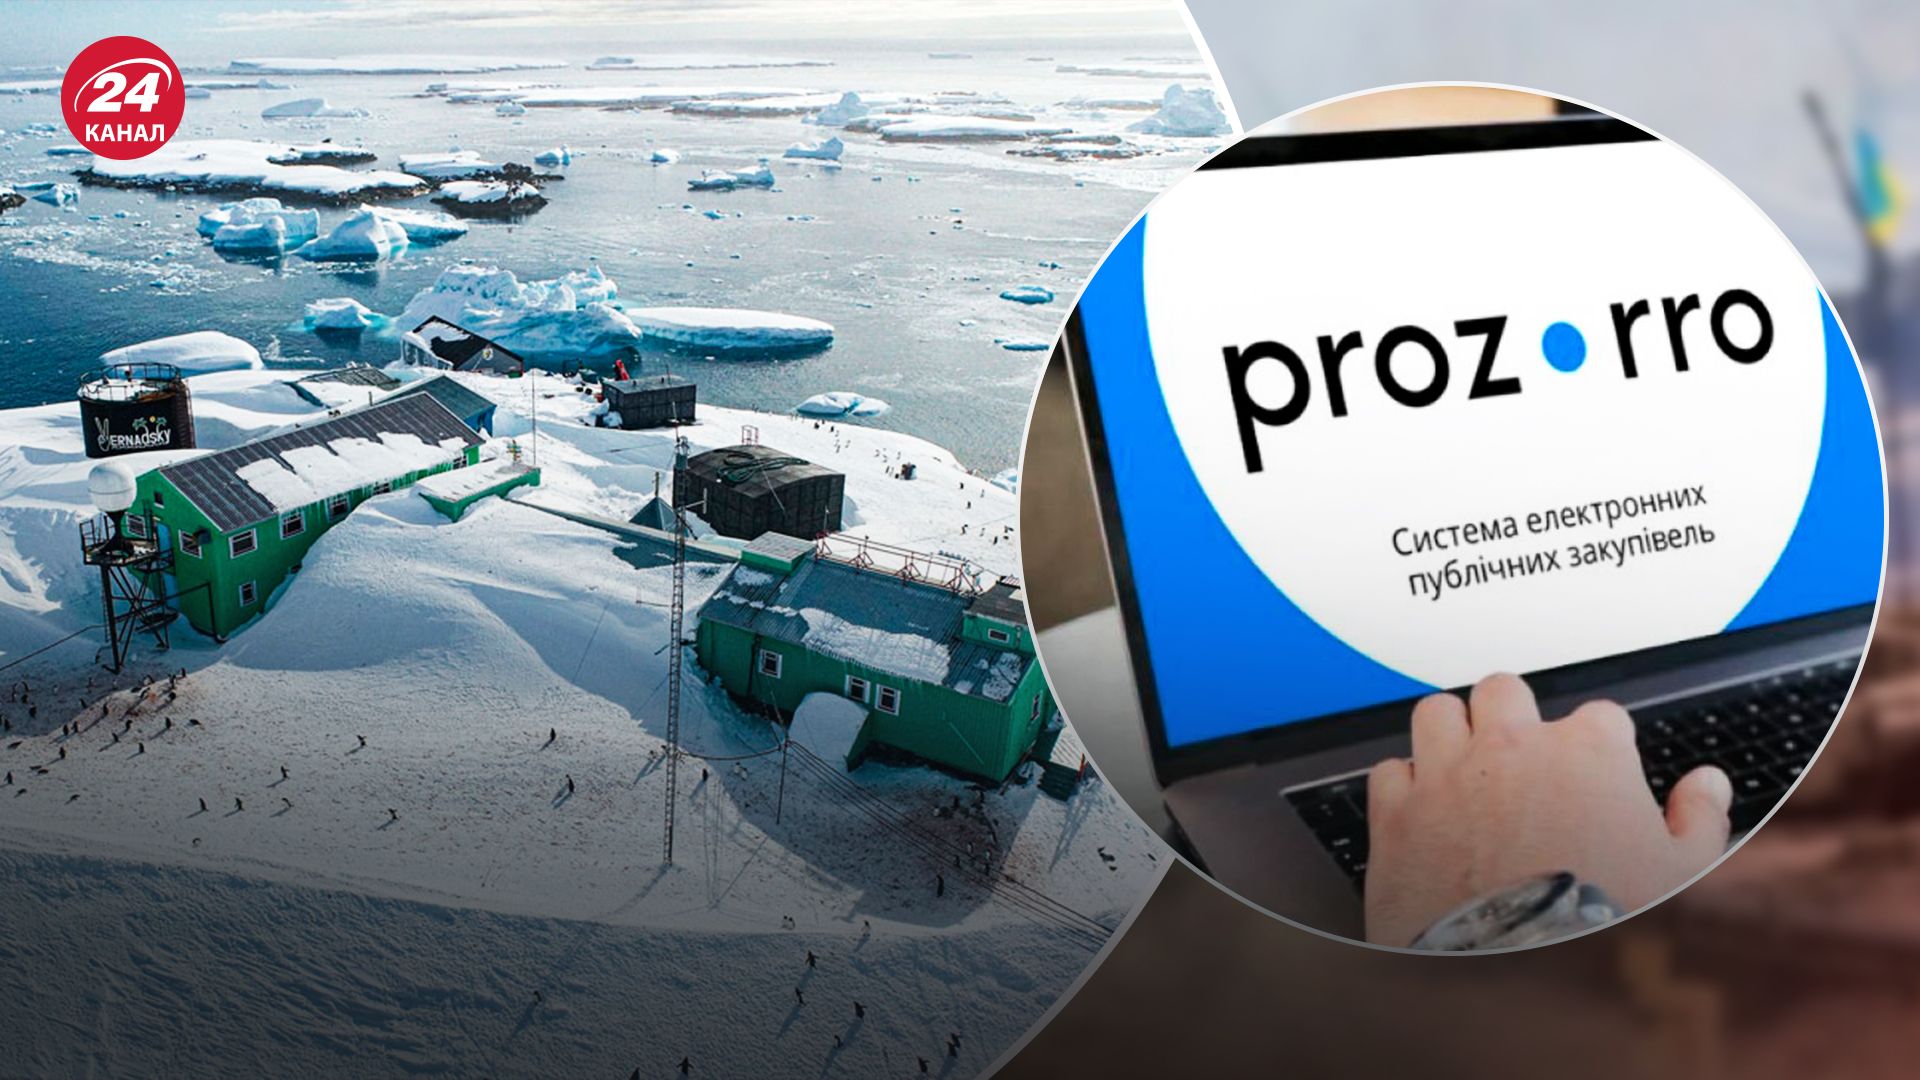 В Національному антарктичному науковому центрі вже відреагували на скандал